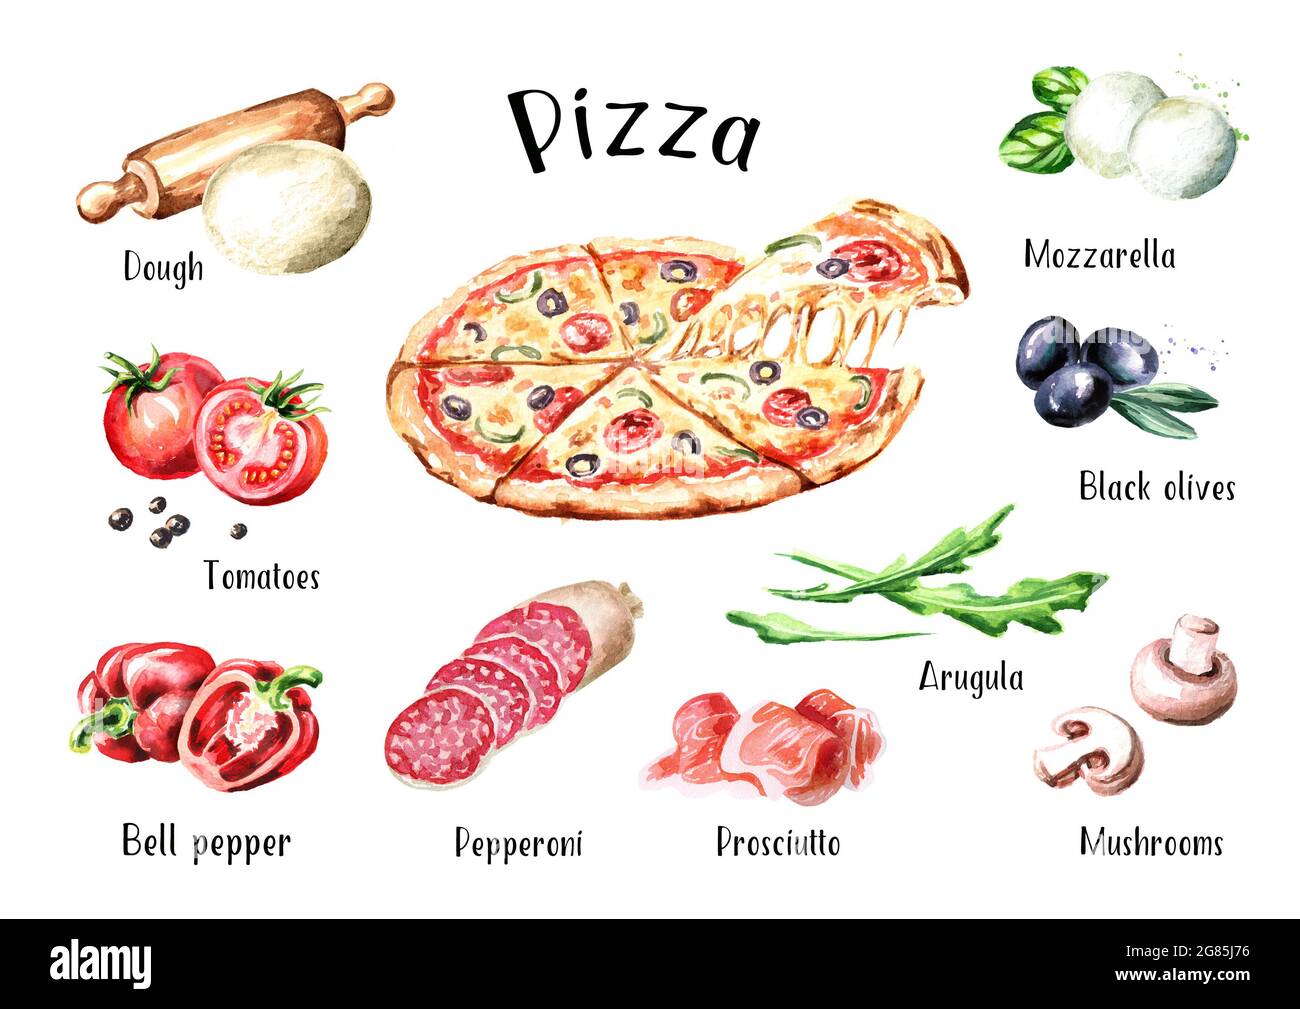 состав пиццы пепперони на английском фото 7